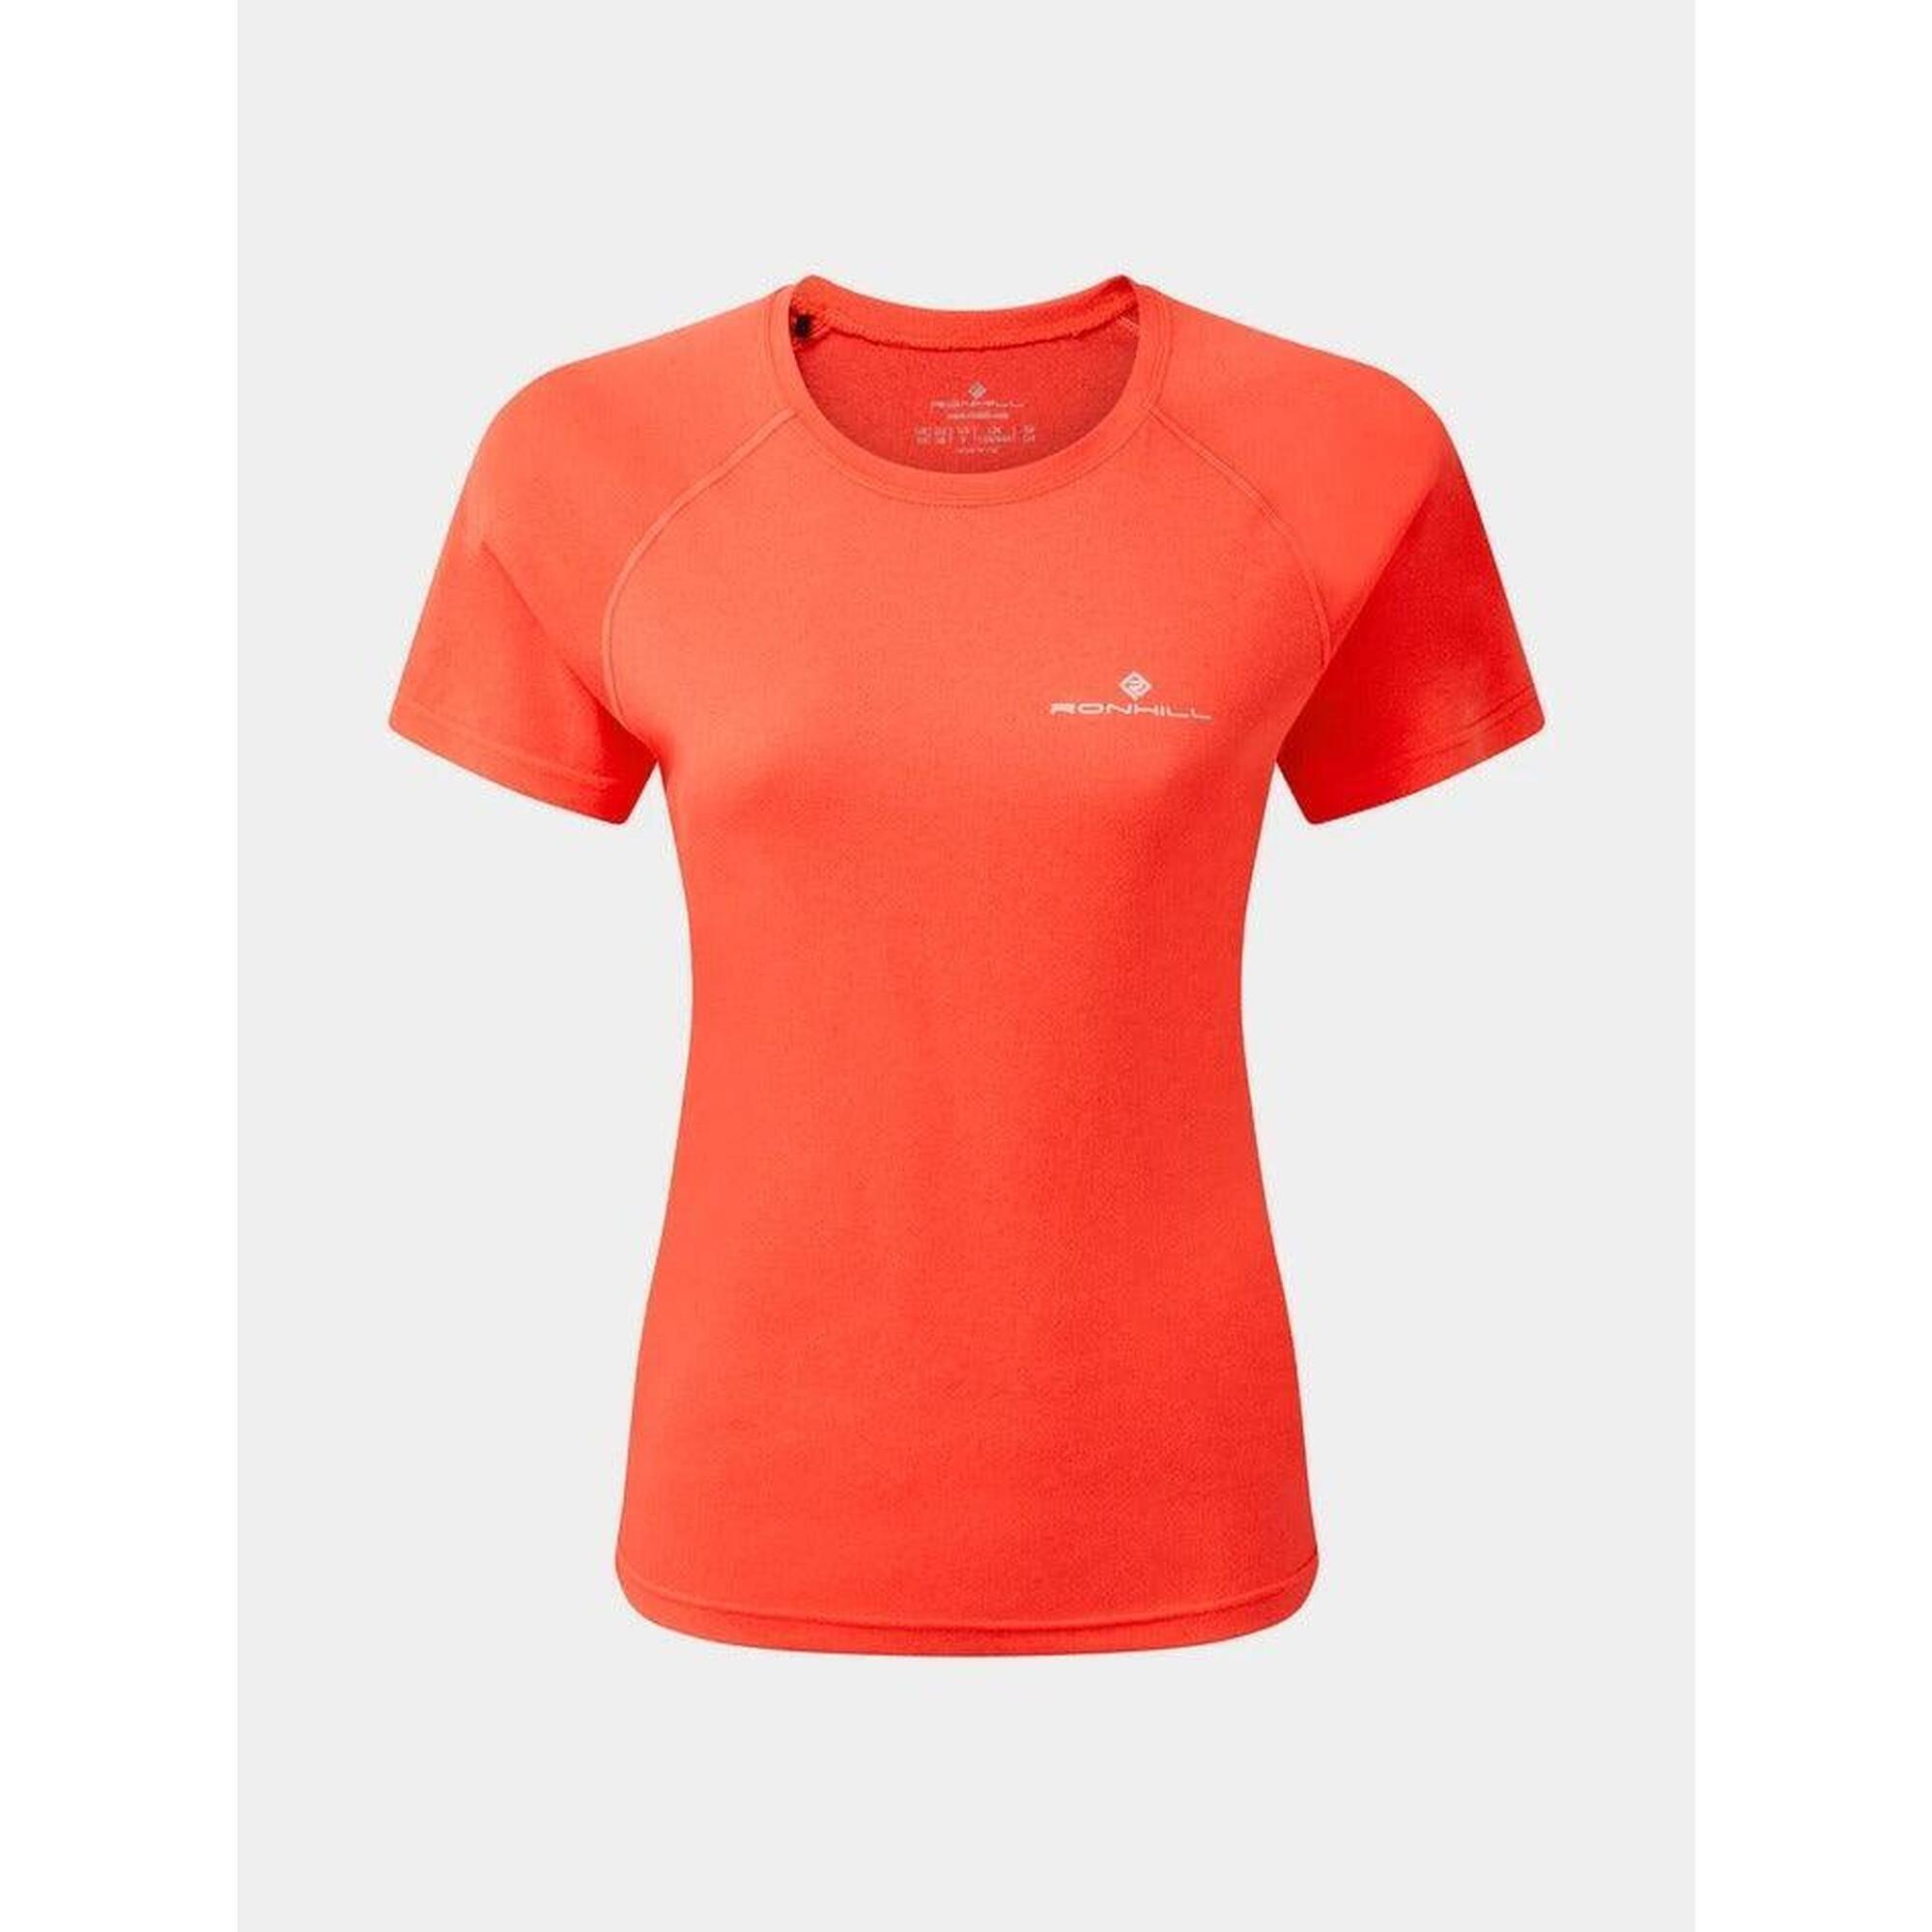 Ronhill Womens Core Short Sleeve Running Tee Shirt 1/2